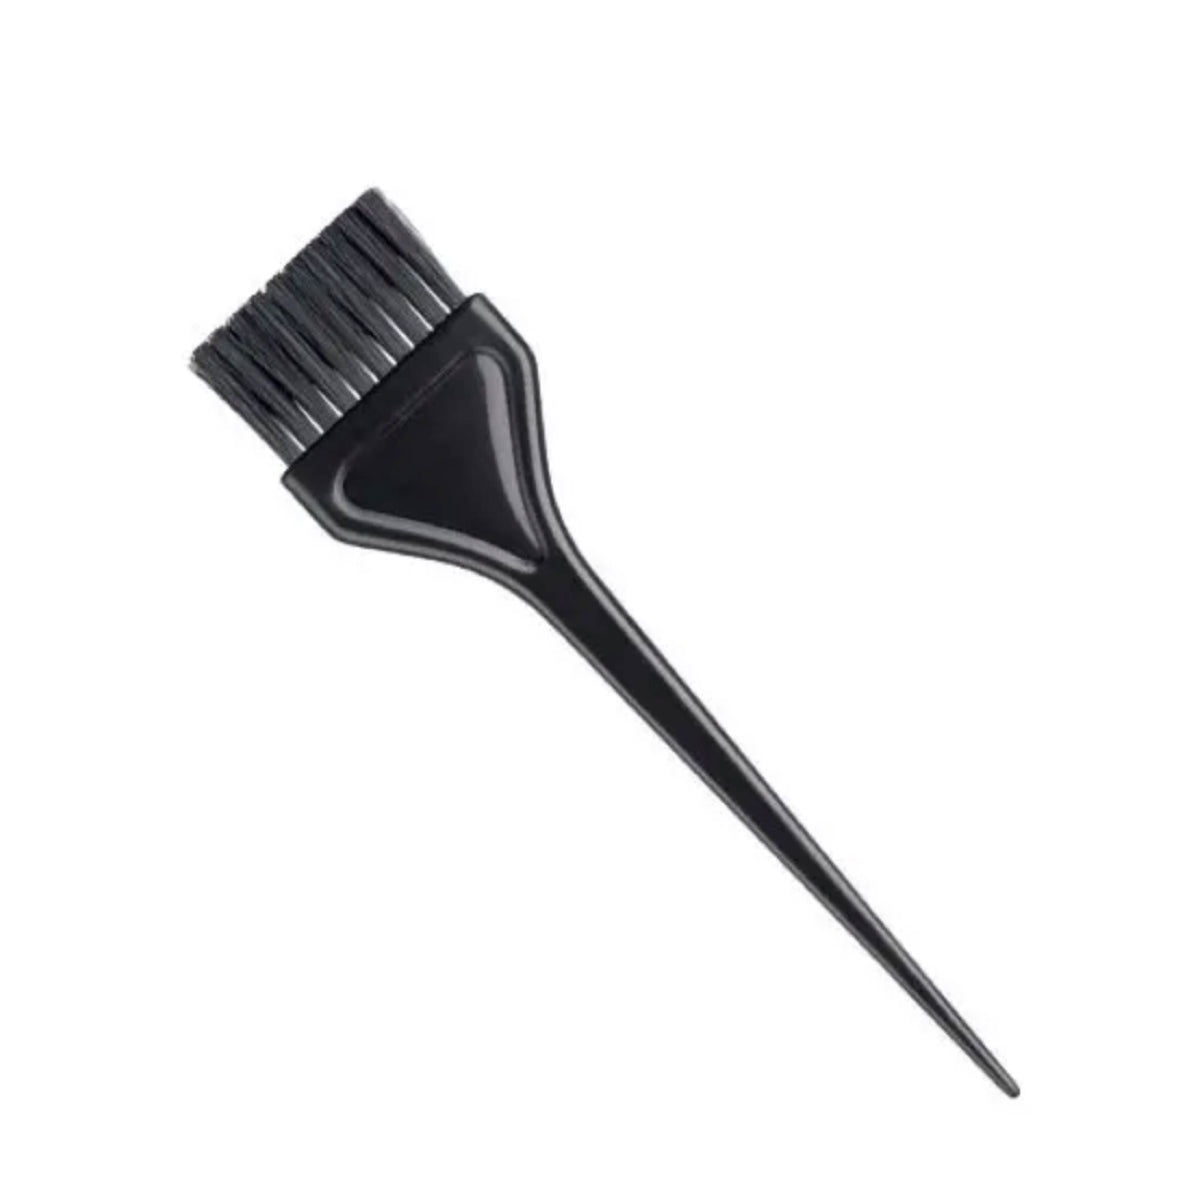 Pensula pentru vopsit, neagra din plastic 5,5 x 23 cm - 1 buc